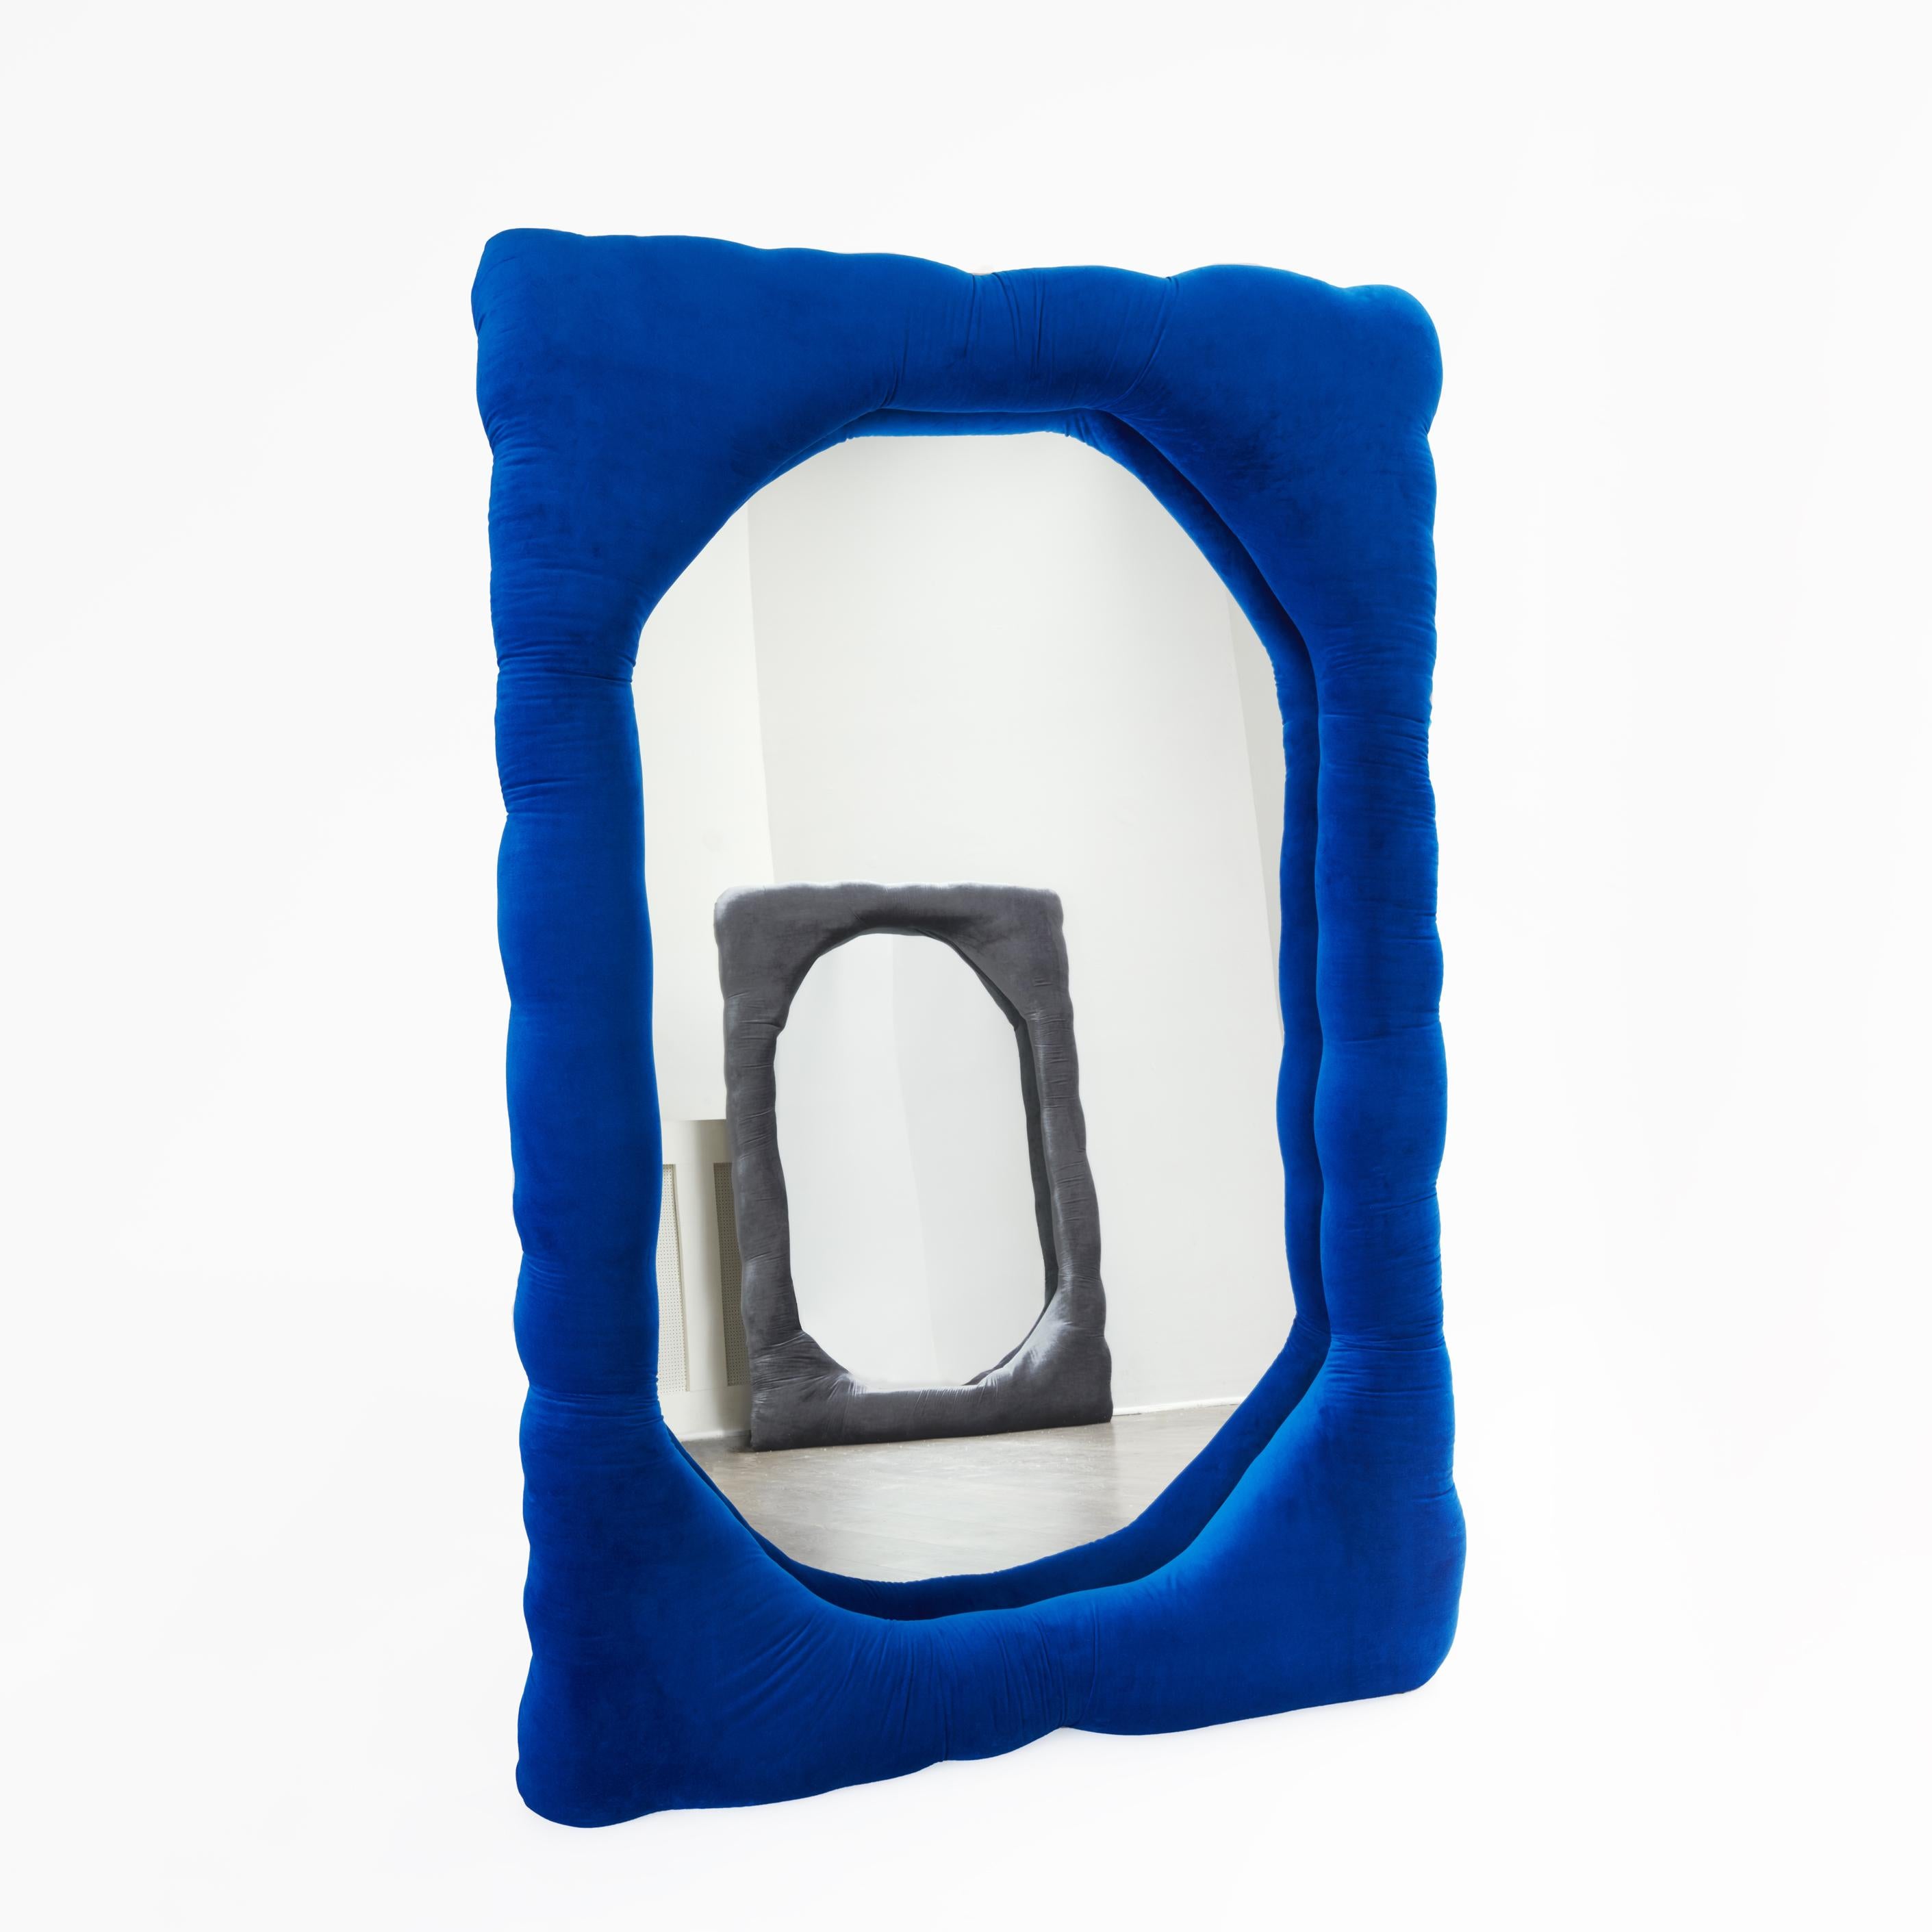 Miroir biomorphique par Brandi Howe

Tissu en velours, miroir, bois

Illustration : 68 x 45 x 5 in.

Ce miroir est entièrement personnalisable dans de multiples options de couleurs, de tissus et de tailles.

Autres dimensions disponibles : 60 x 15 x